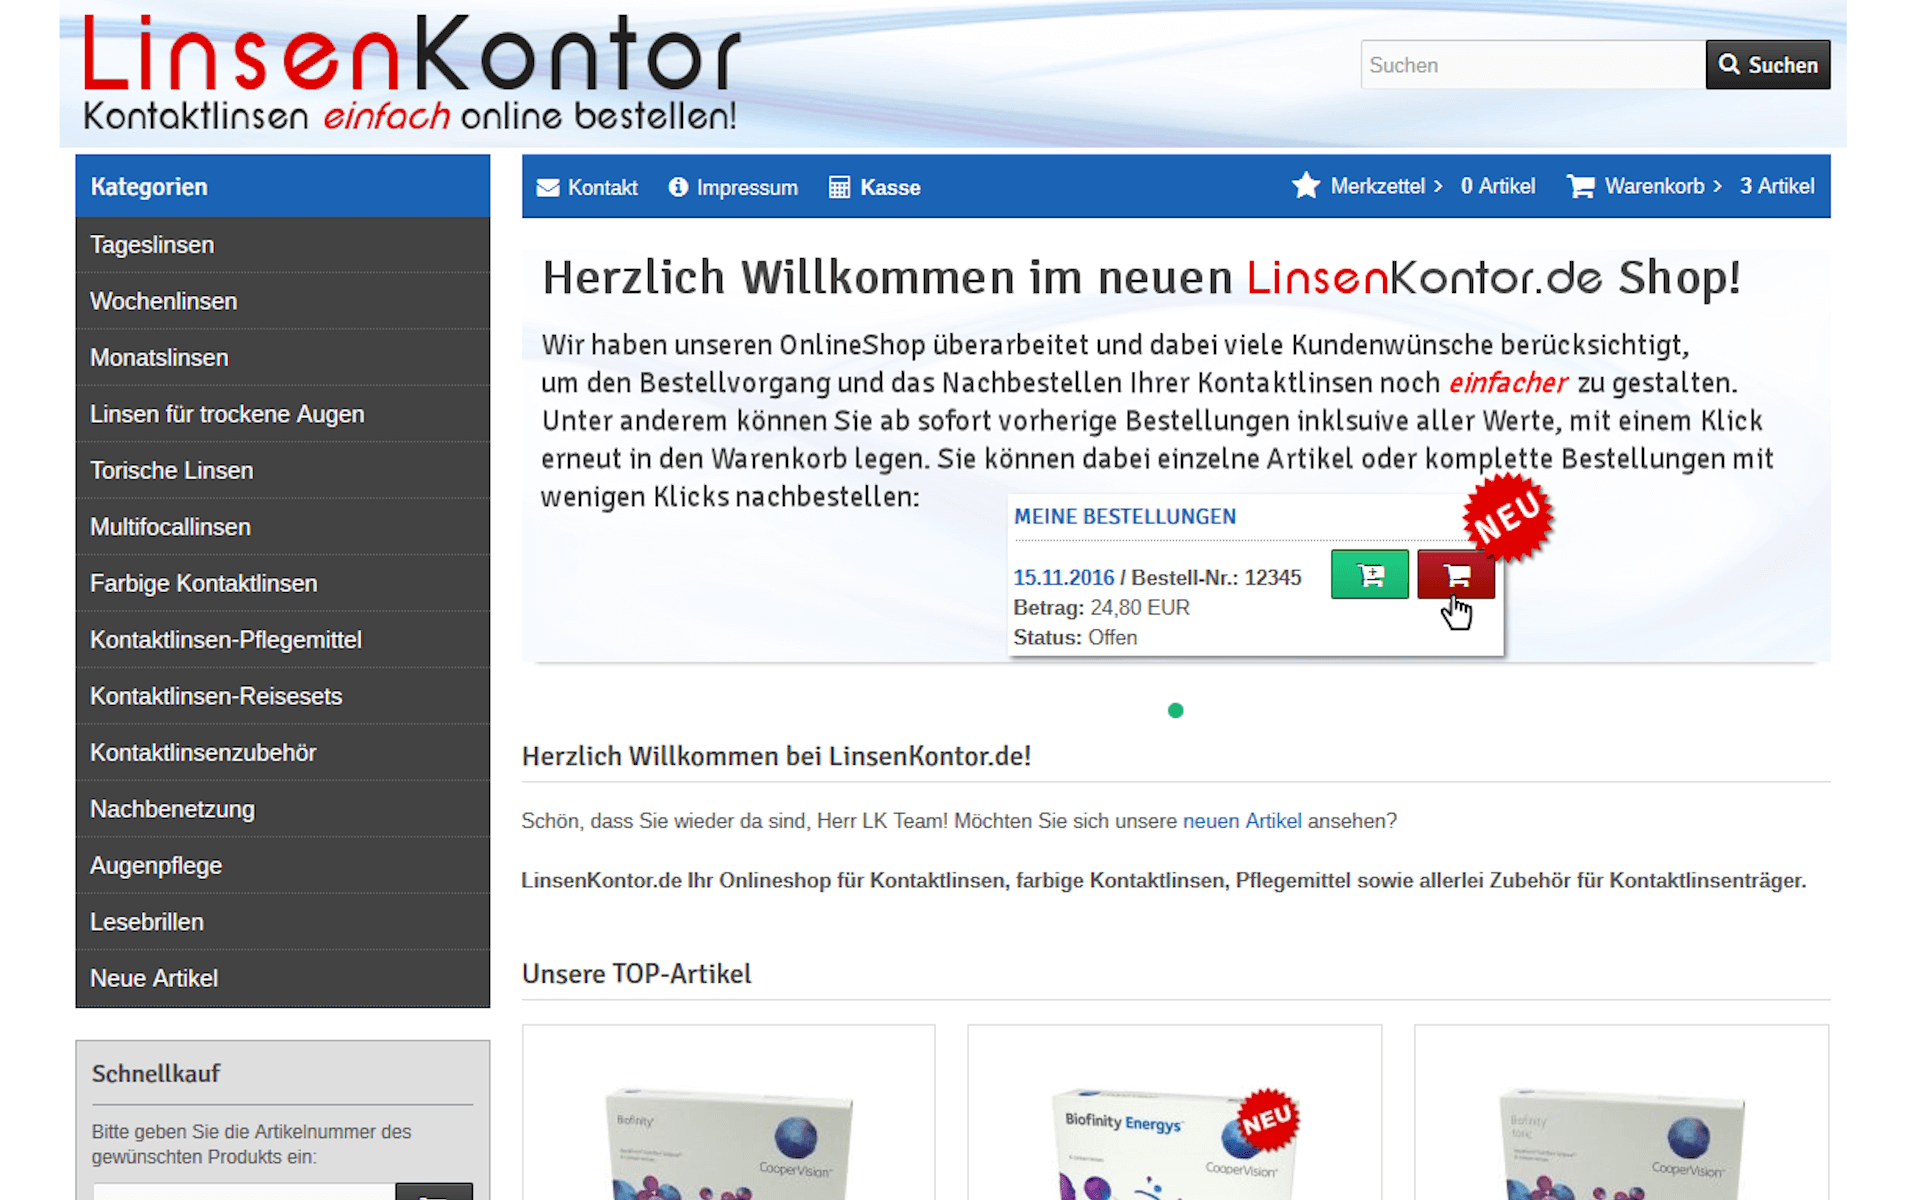 LinsenKontor.de - Kontaktlinsen einfach online bestellen!